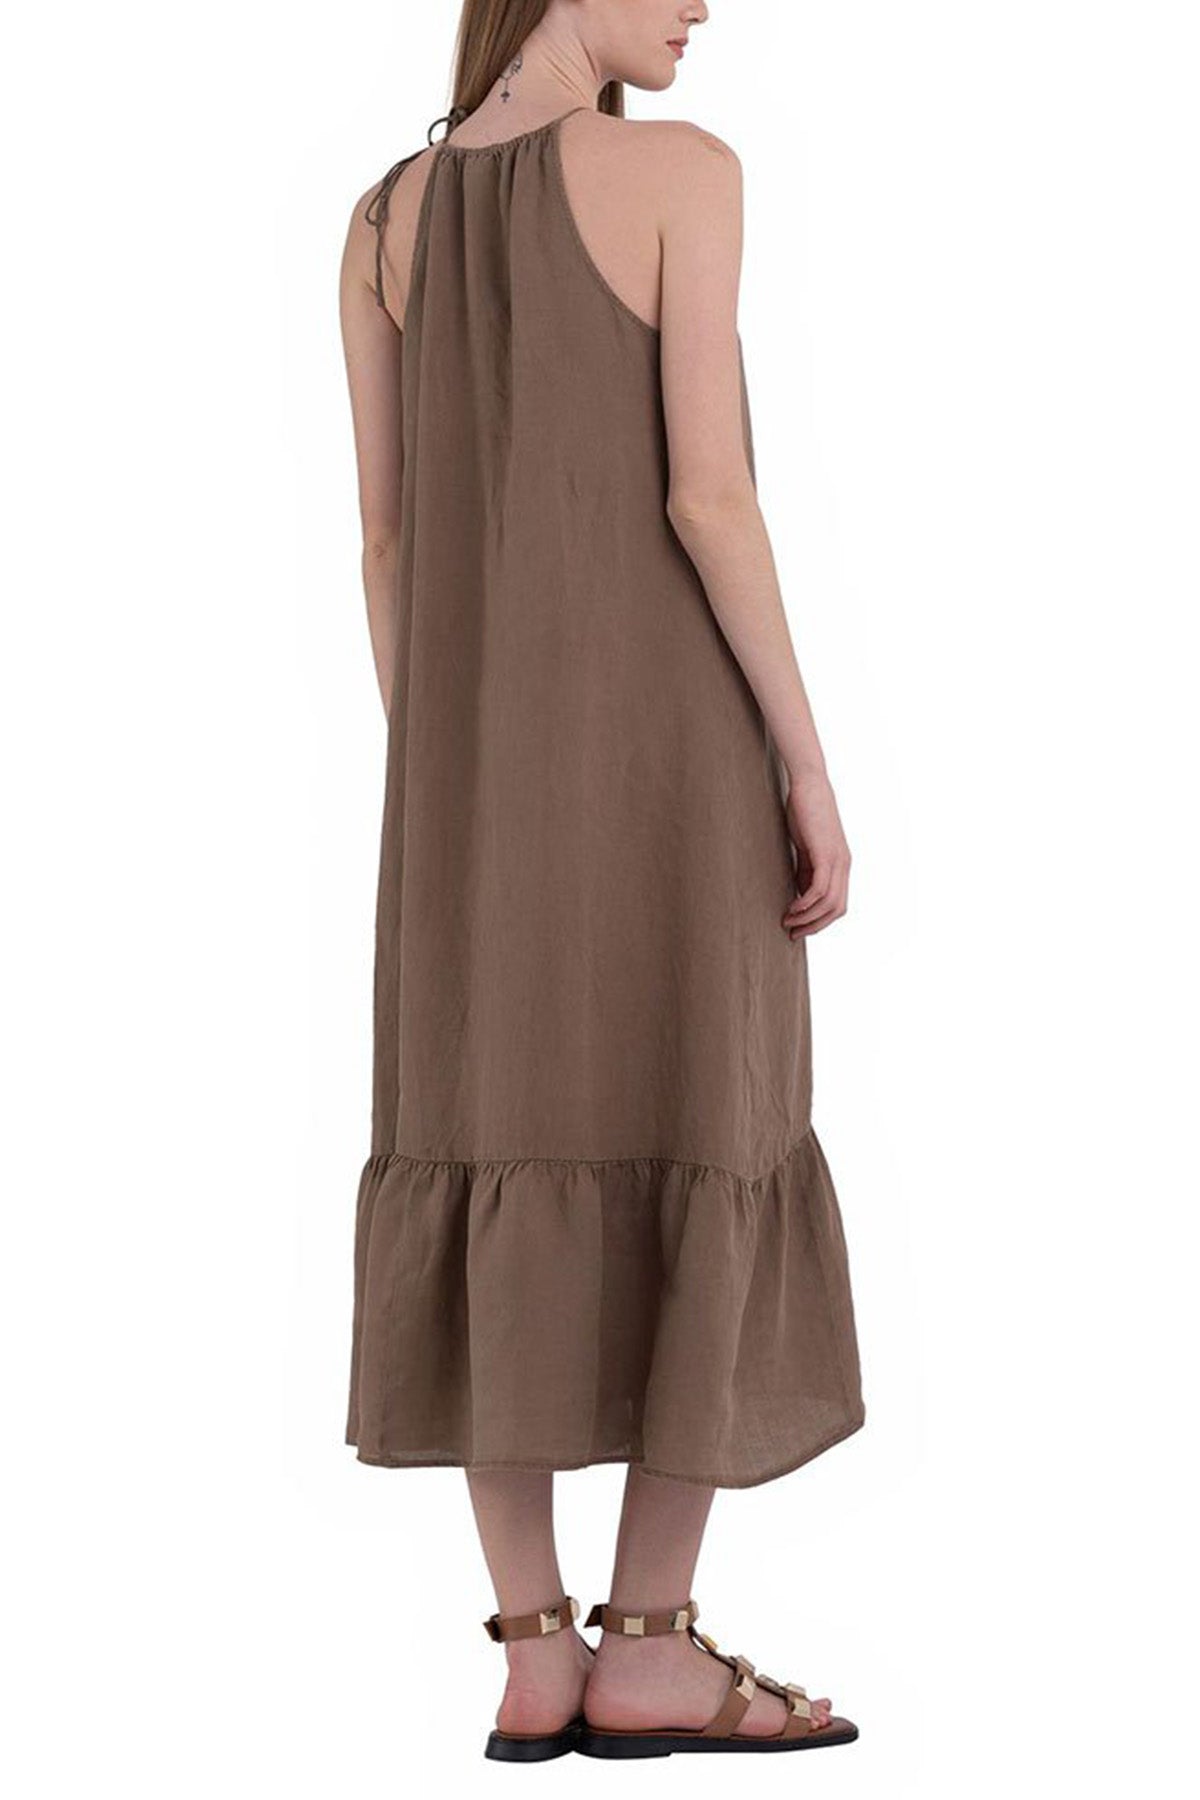 Replay Maxi Keten Elbise-Libas Trendy Fashion Store